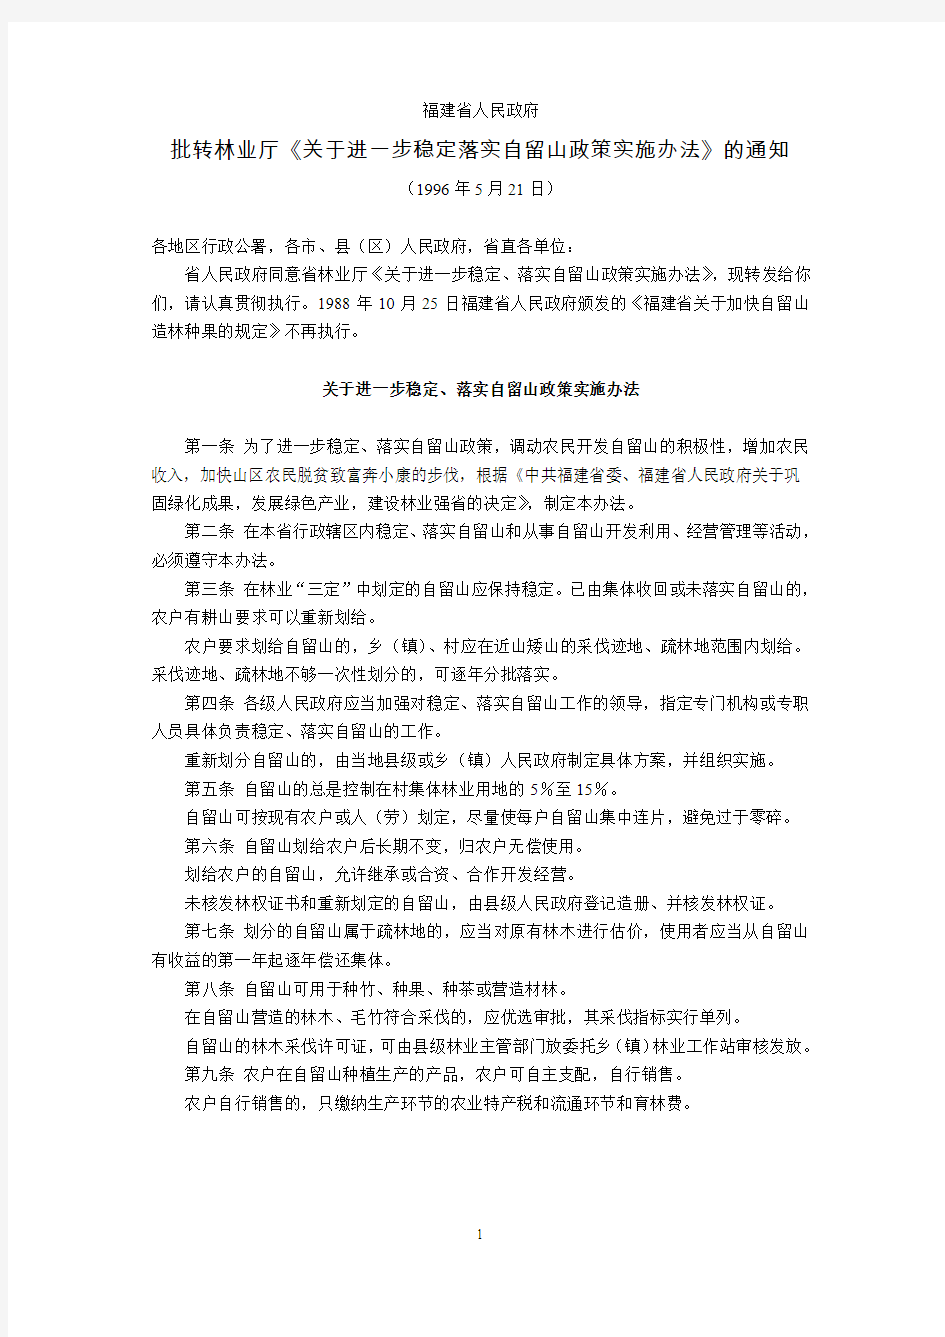 福建省人民政府批转林业厅《关于进一步稳定落实自留山政策实施办法》的通知(1996年5月21日)